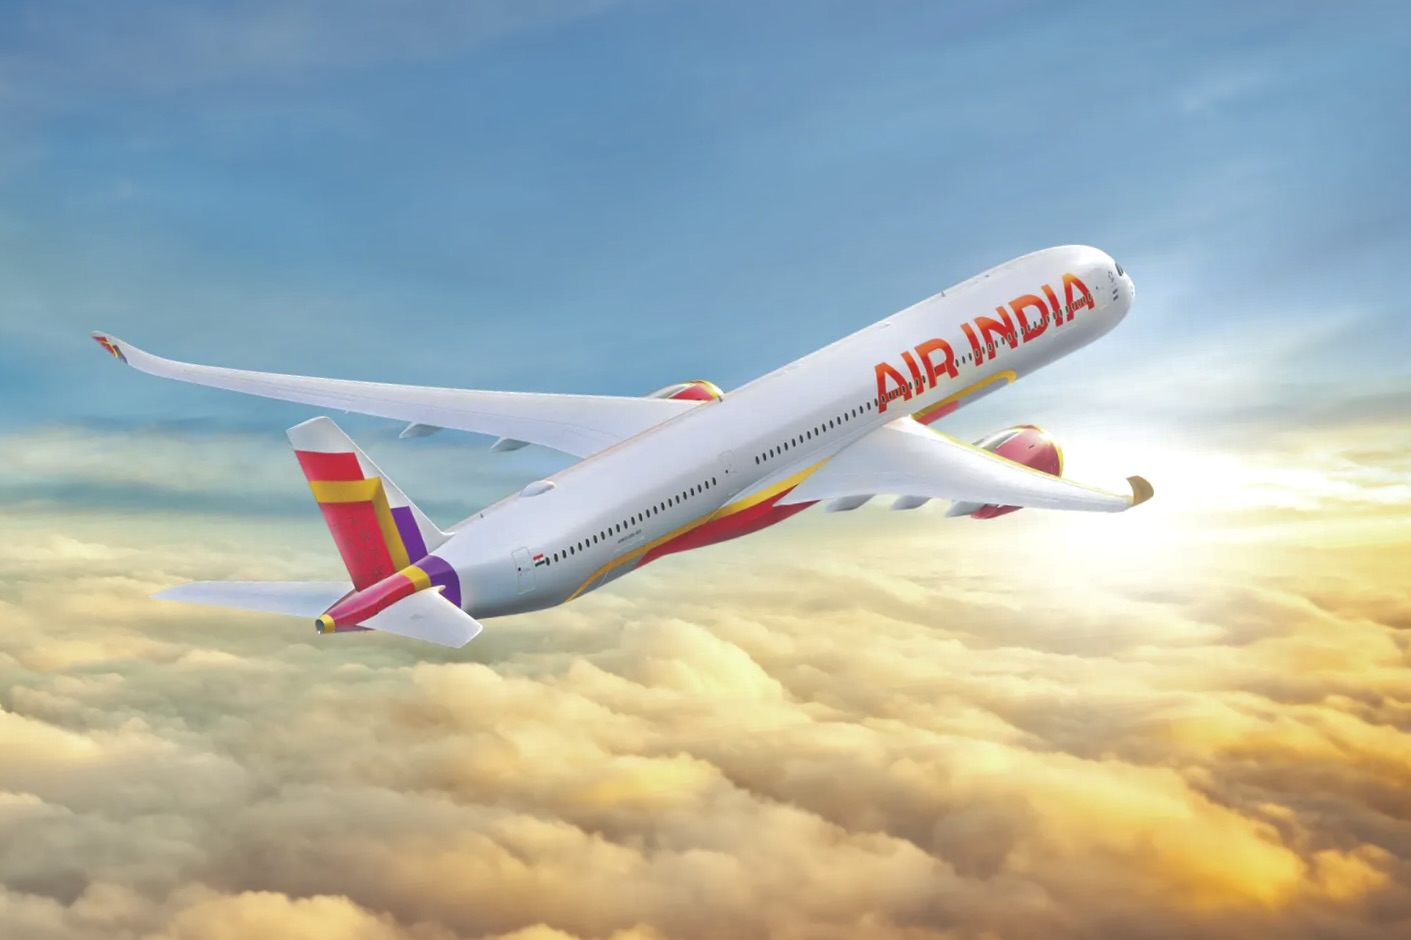 De cara nova: Air India lança seu novo esquema visual